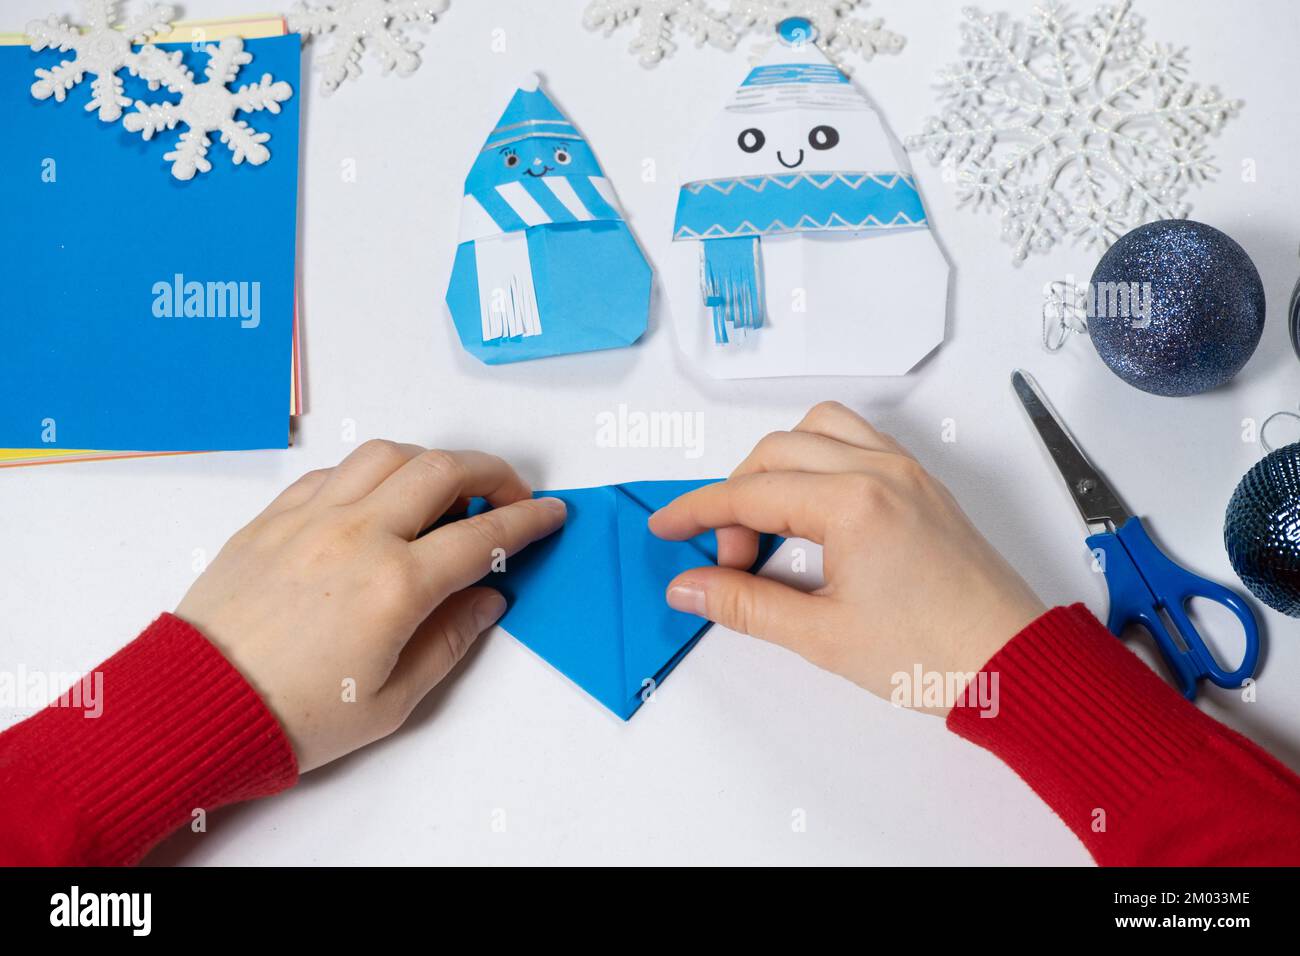 Création d'artisanat d'origami à partir de papier pour Noël et le nouvel an, figurine de bonhomme de neige. Banque D'Images